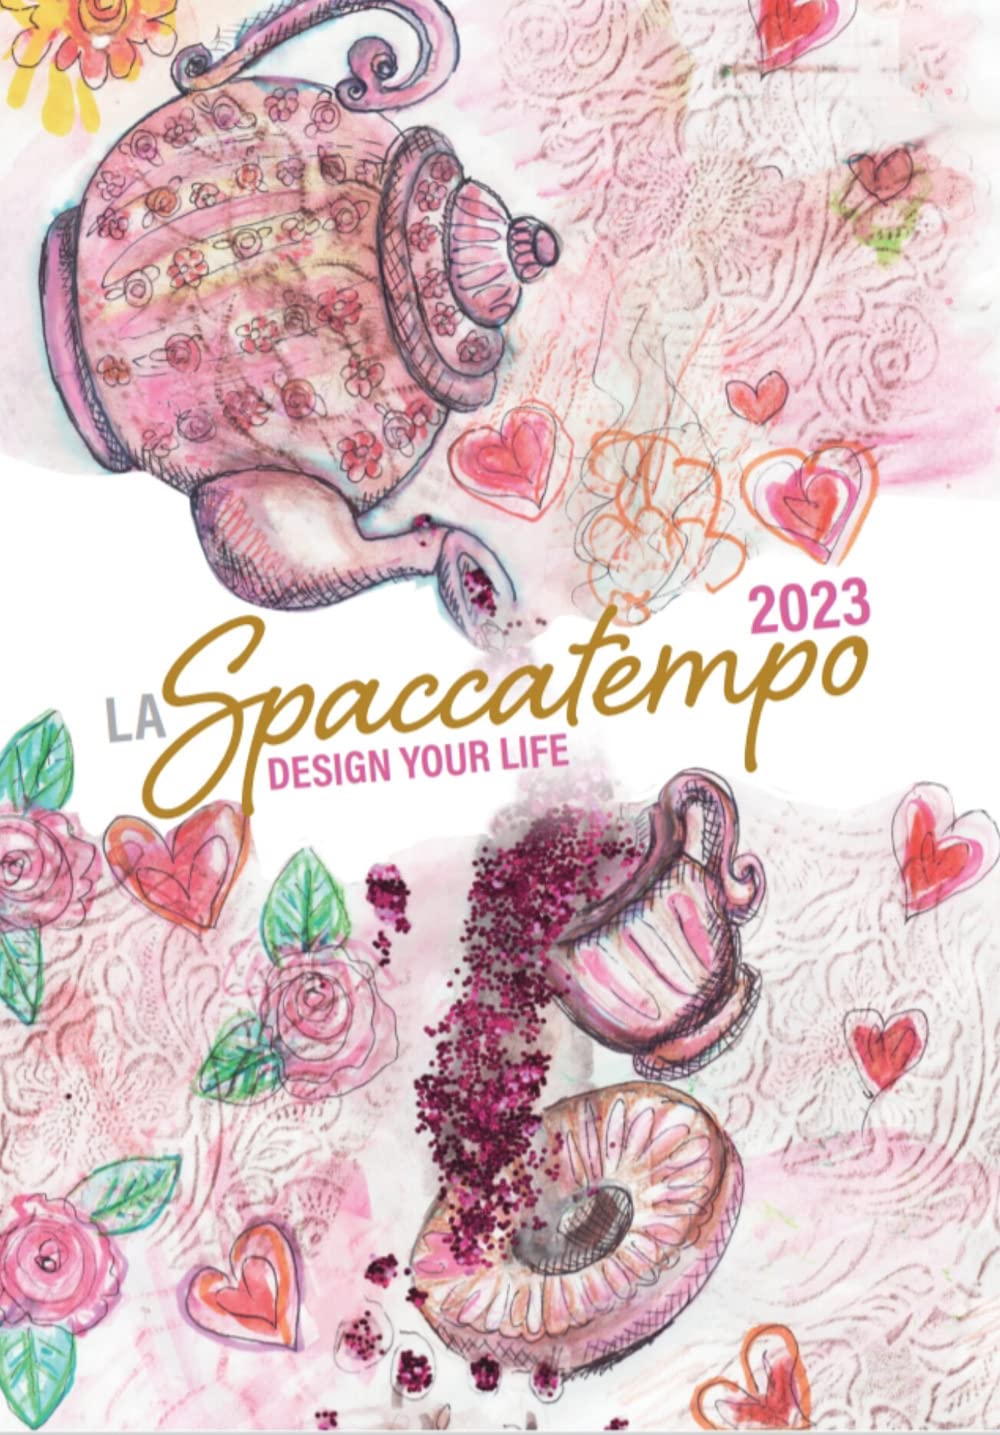 Libri La Spaccatempo 2023 NUOVO SIGILLATO, EDIZIONE DEL 01/12/2022 SUBITO DISPONIBILE